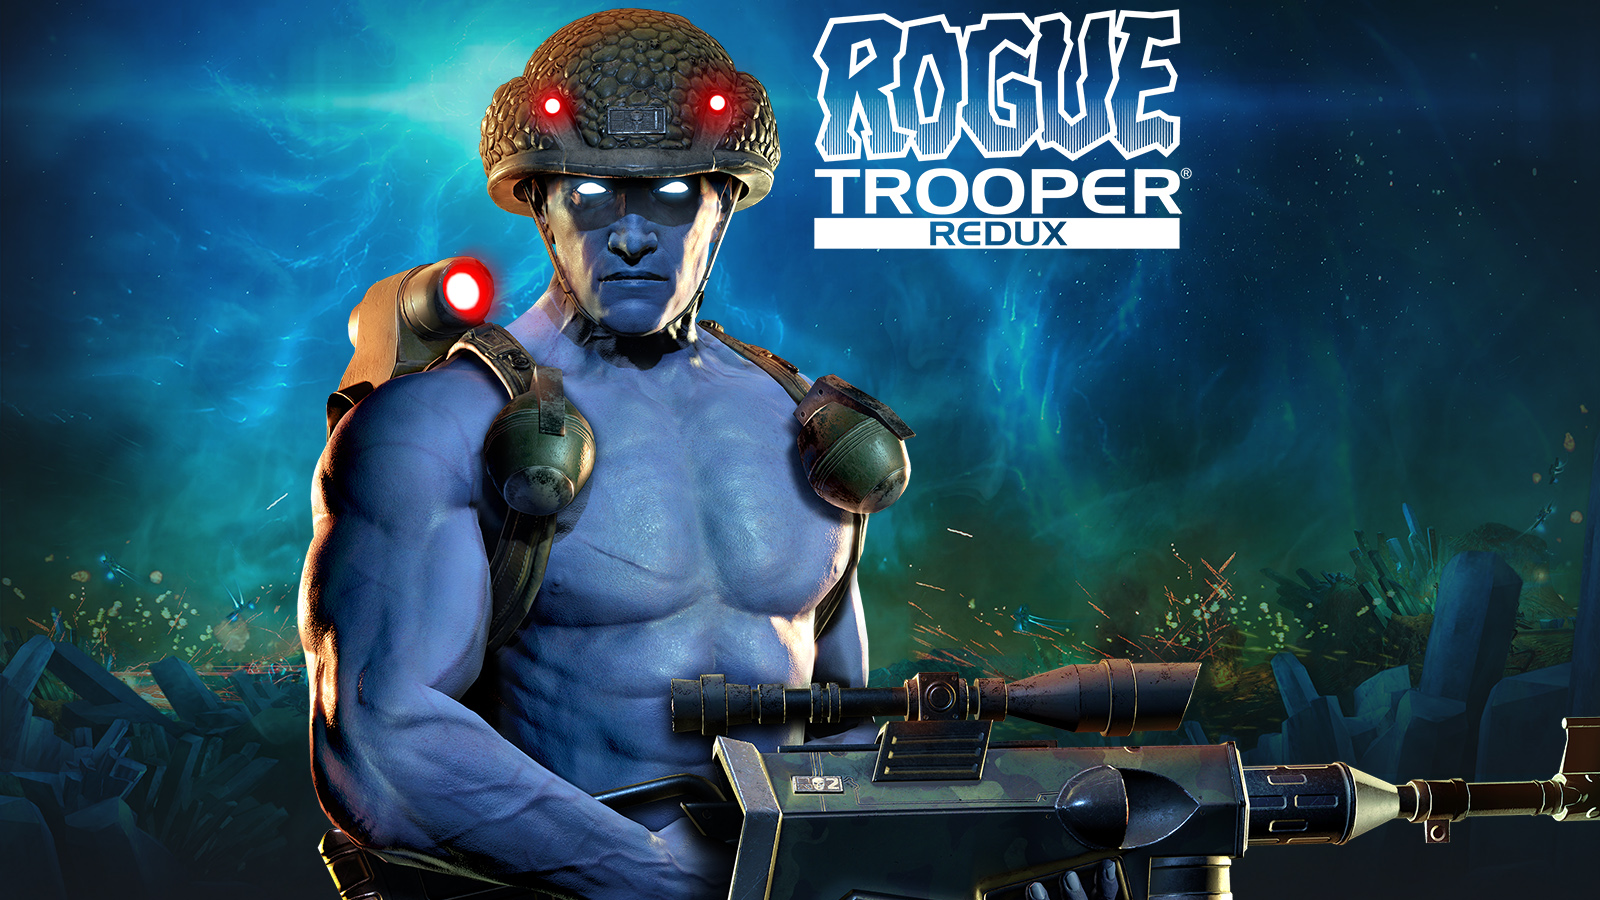 Trooper redux. Rogue Trooper (игра, 2006). Rogue Trooper Redux (Xbox). Оружие Rogue Trooper. Игра Rogue Trooper Redux.